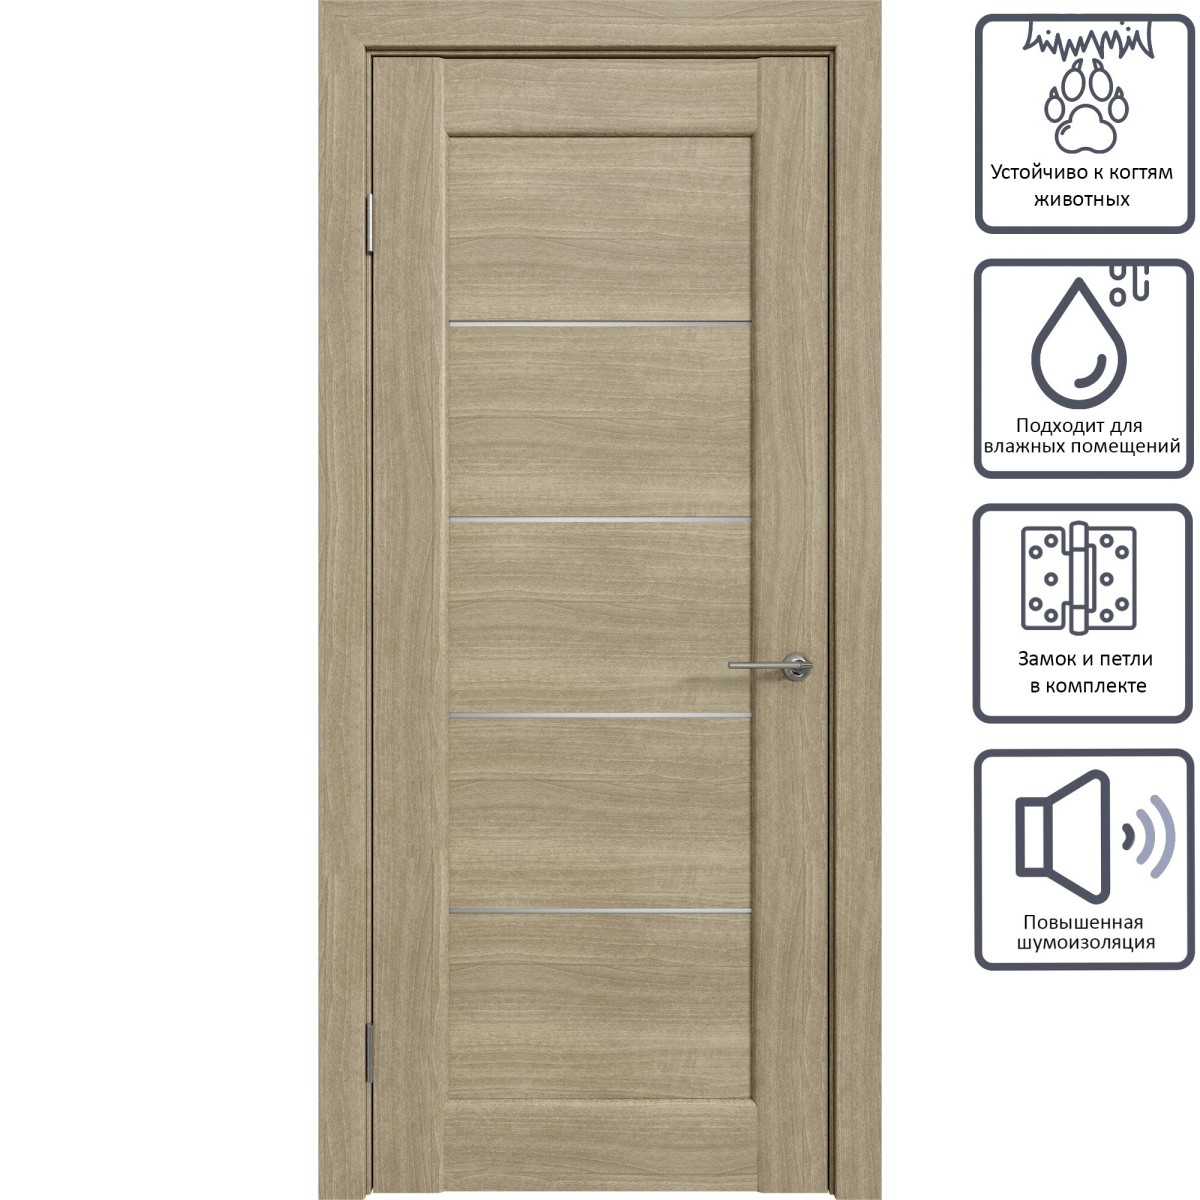 Дверь межкомнатная остеклённая Дельта горизонтальная 60x200 см, ПВХ, цвет ольха серебряная, с фурнитурой